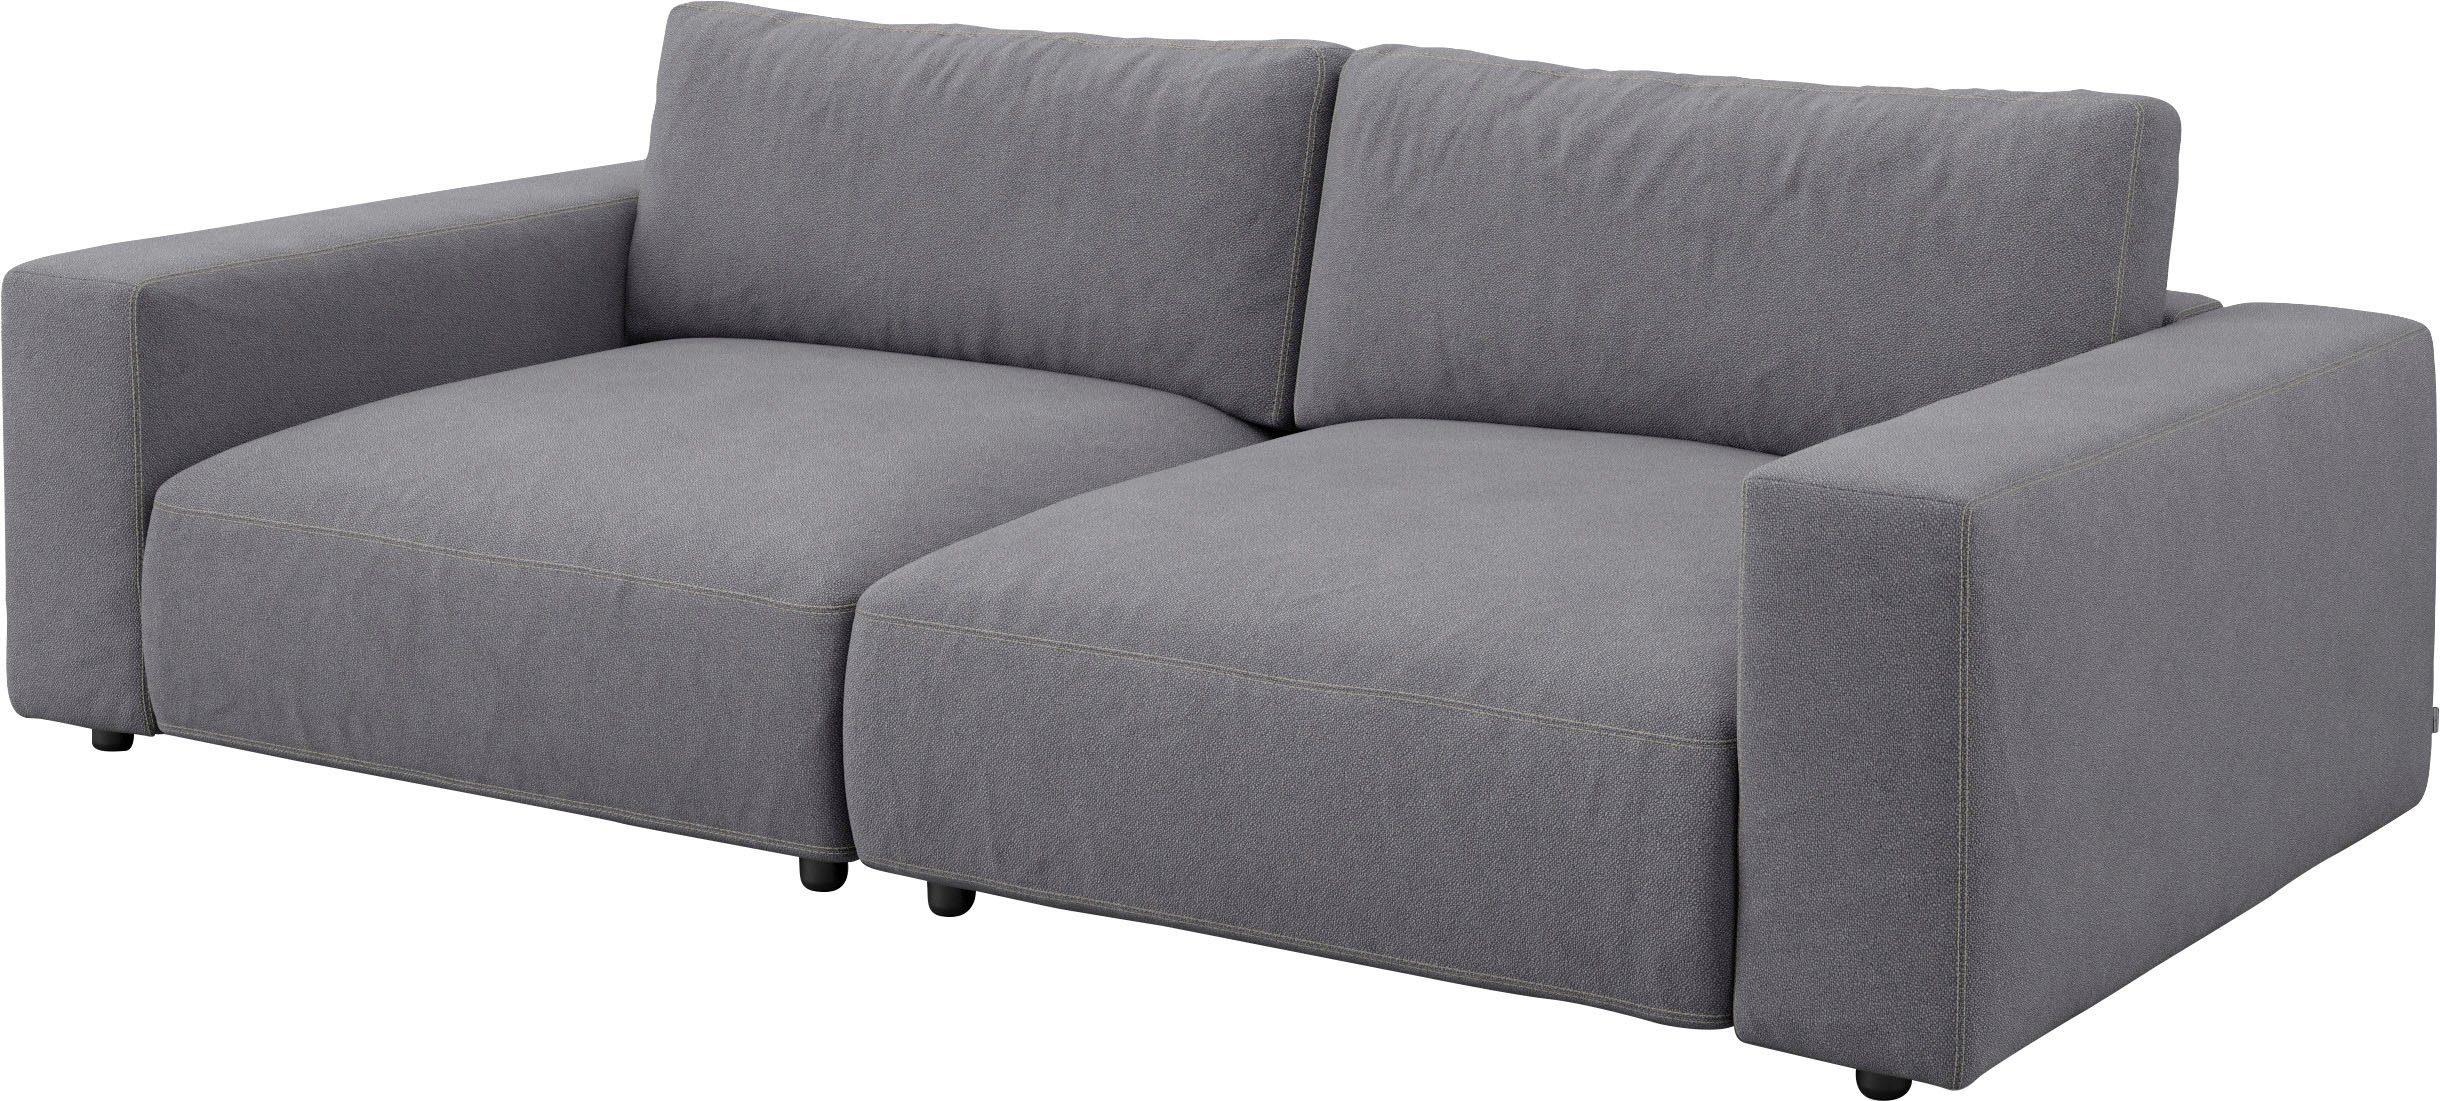 M unterschiedlichen 4 by in und Qualitäten LUCIA, vielen Big-Sofa GALLERY Nähten, branded Musterring 2,5-Sitzer